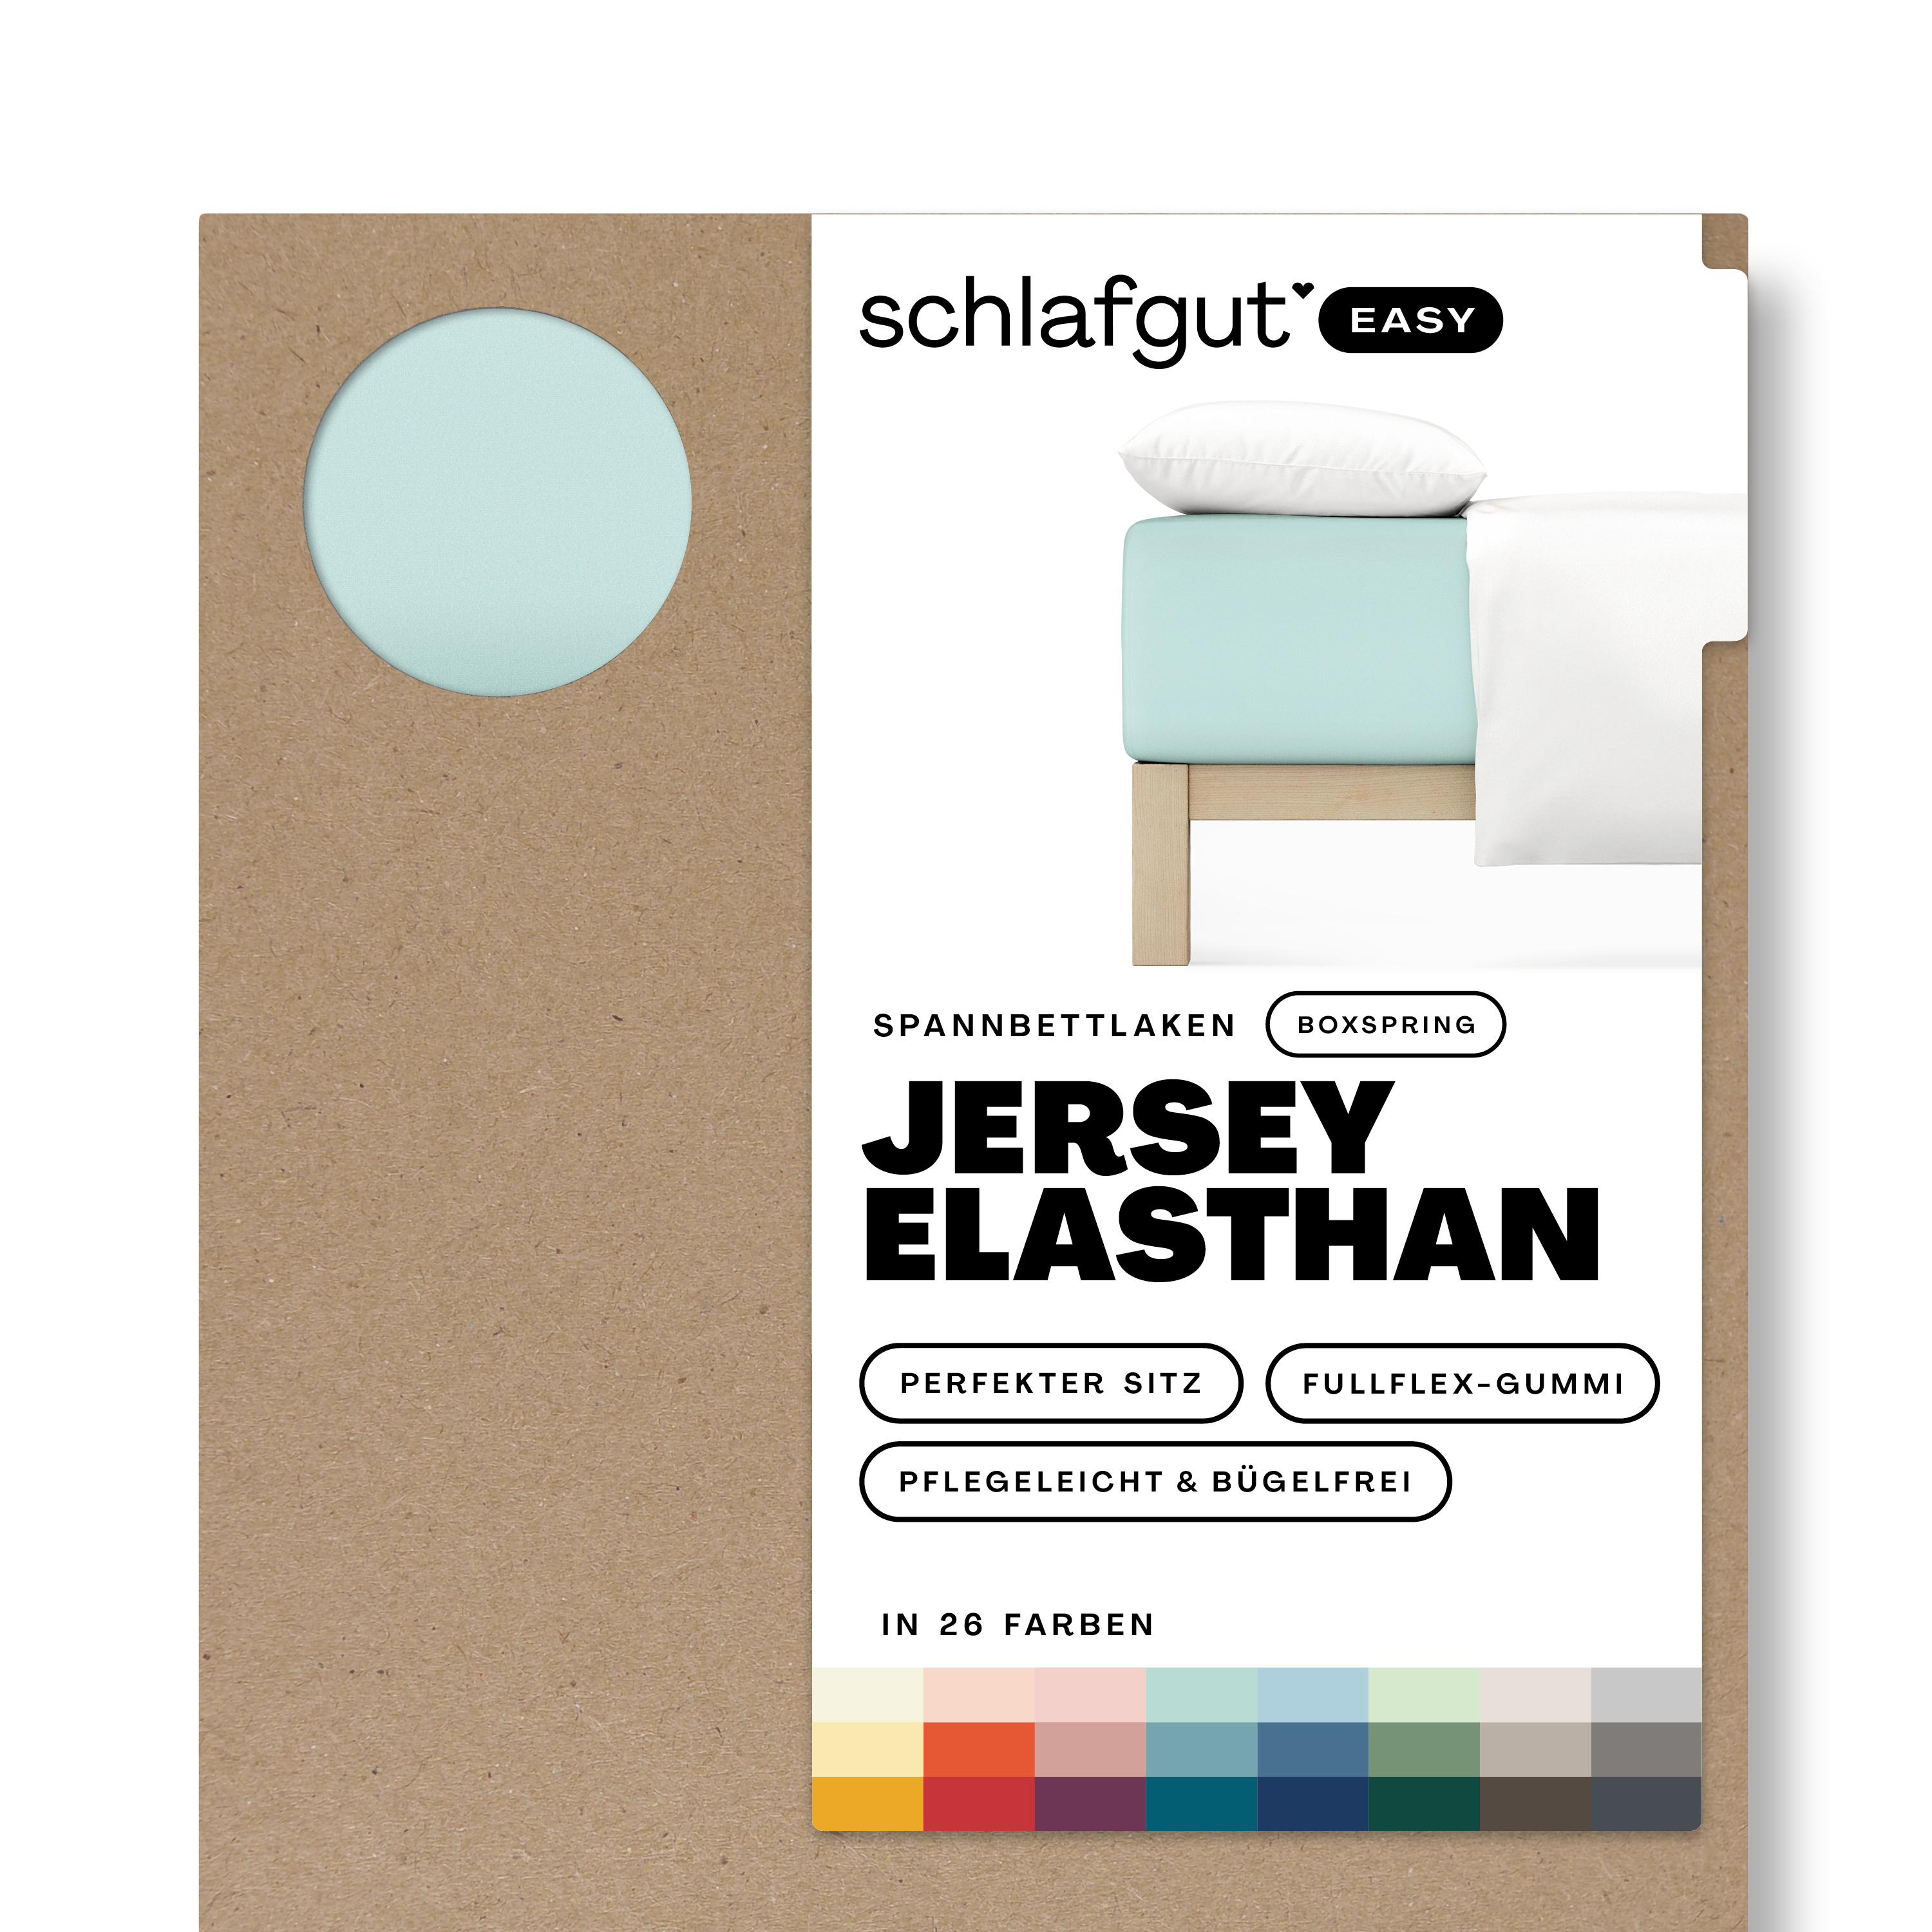 Das Produktbild vom Spannbettlaken der Reihe Easy Elasthan Boxspring in Farbe petrol light von Schlafgut